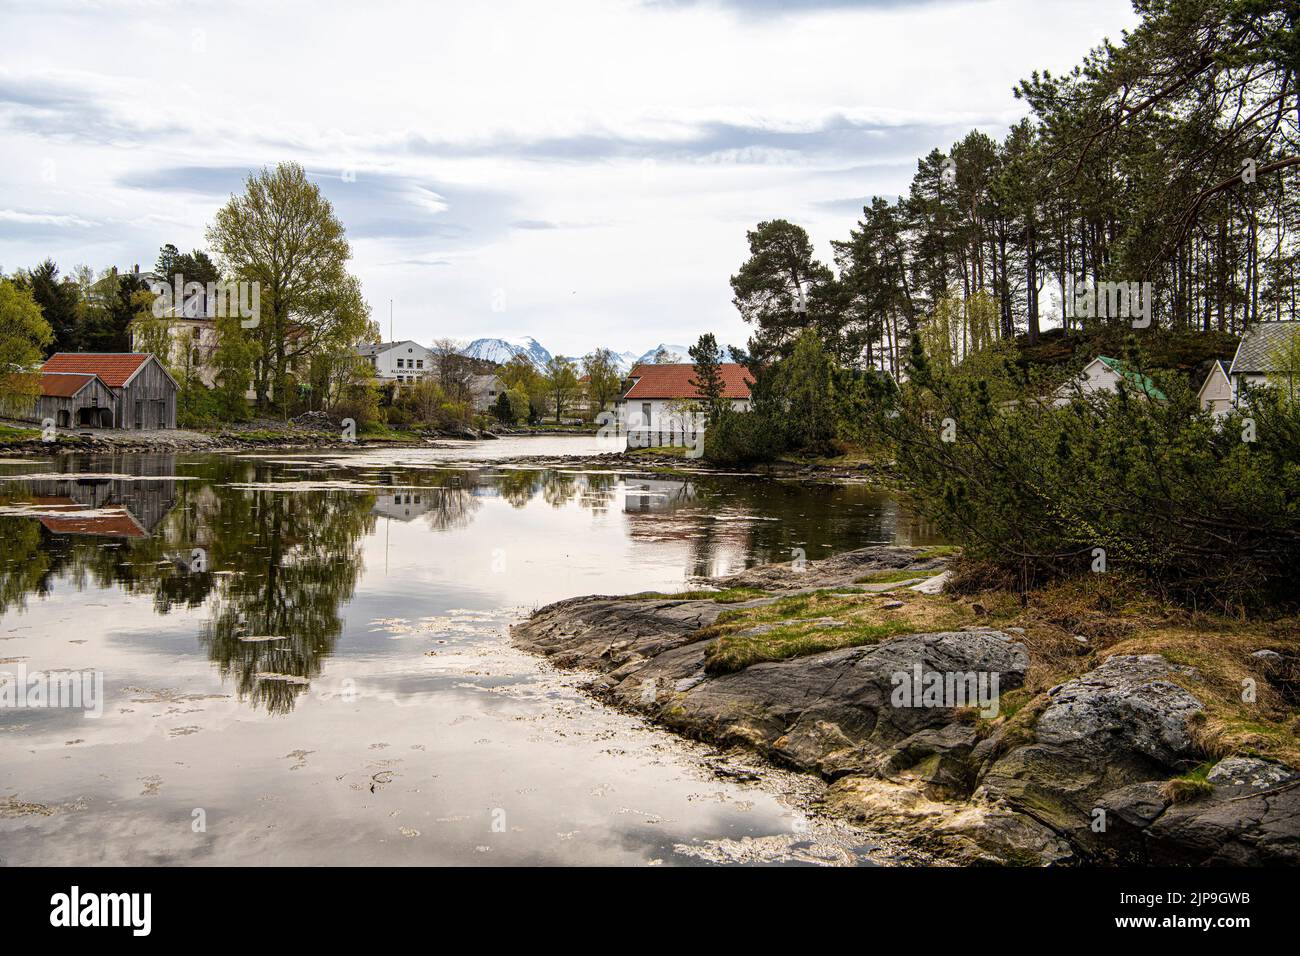 Ålesund est une ville portuaire située sur la côte ouest de la Norvège, à l'entrée du fjord Geiranger. Il est connu pour le style architectural Art nouveau en whic Banque D'Images